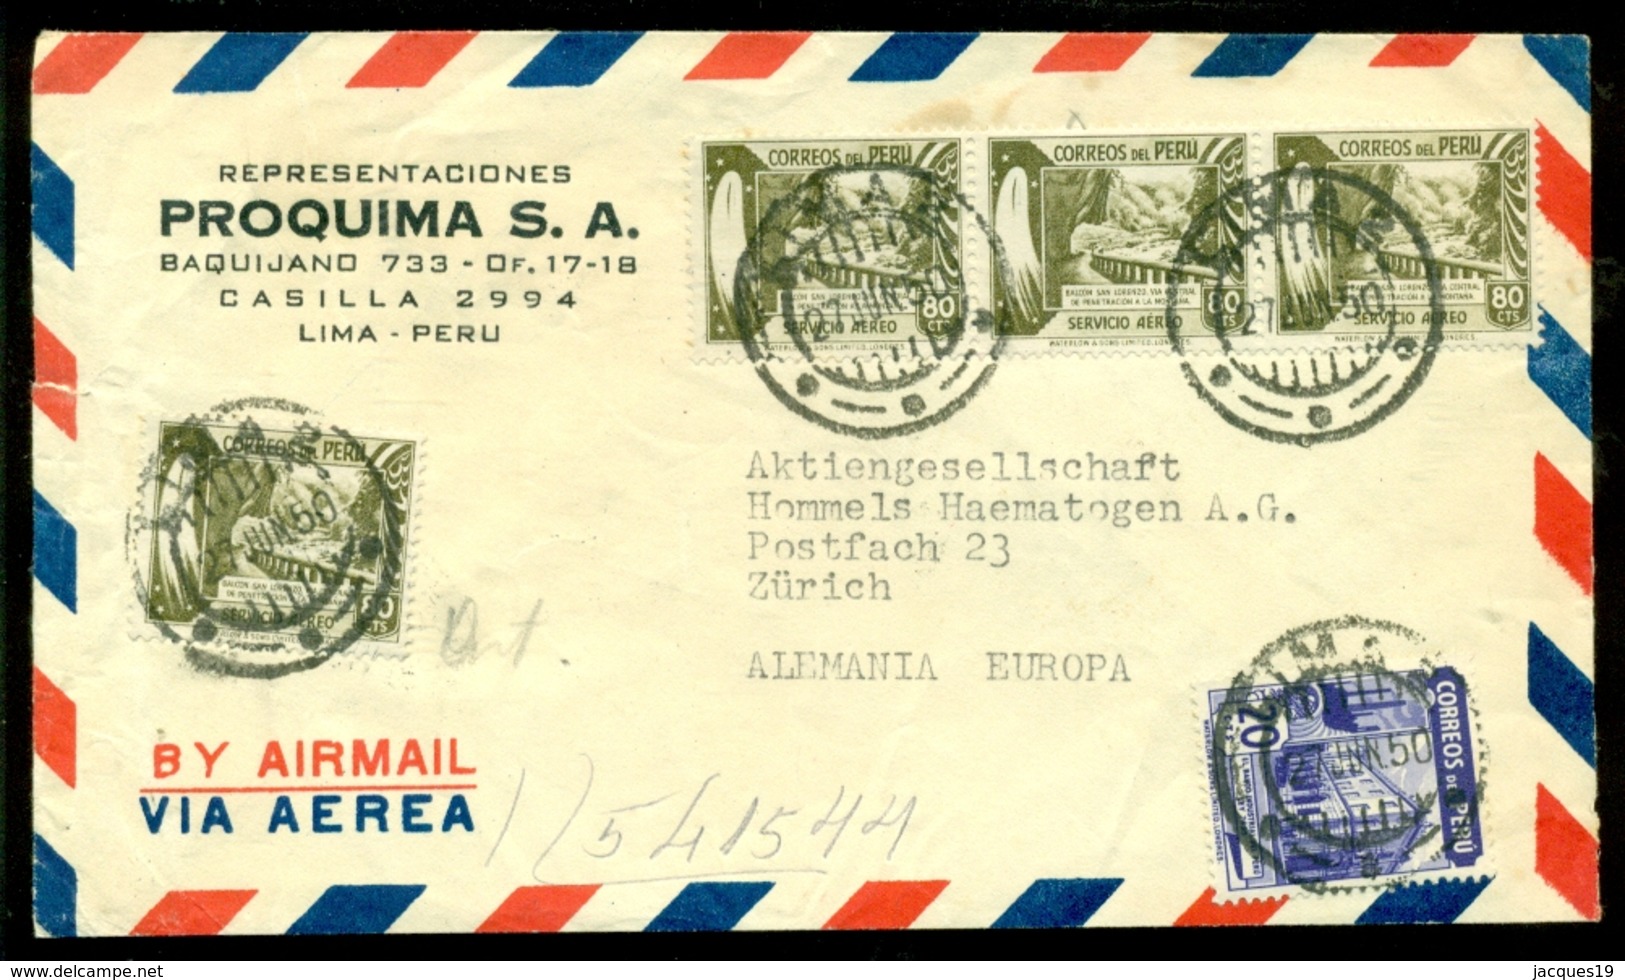 Peru 1950 Airmail Cover From Proquima S.A. Lima To Zurich - Peru